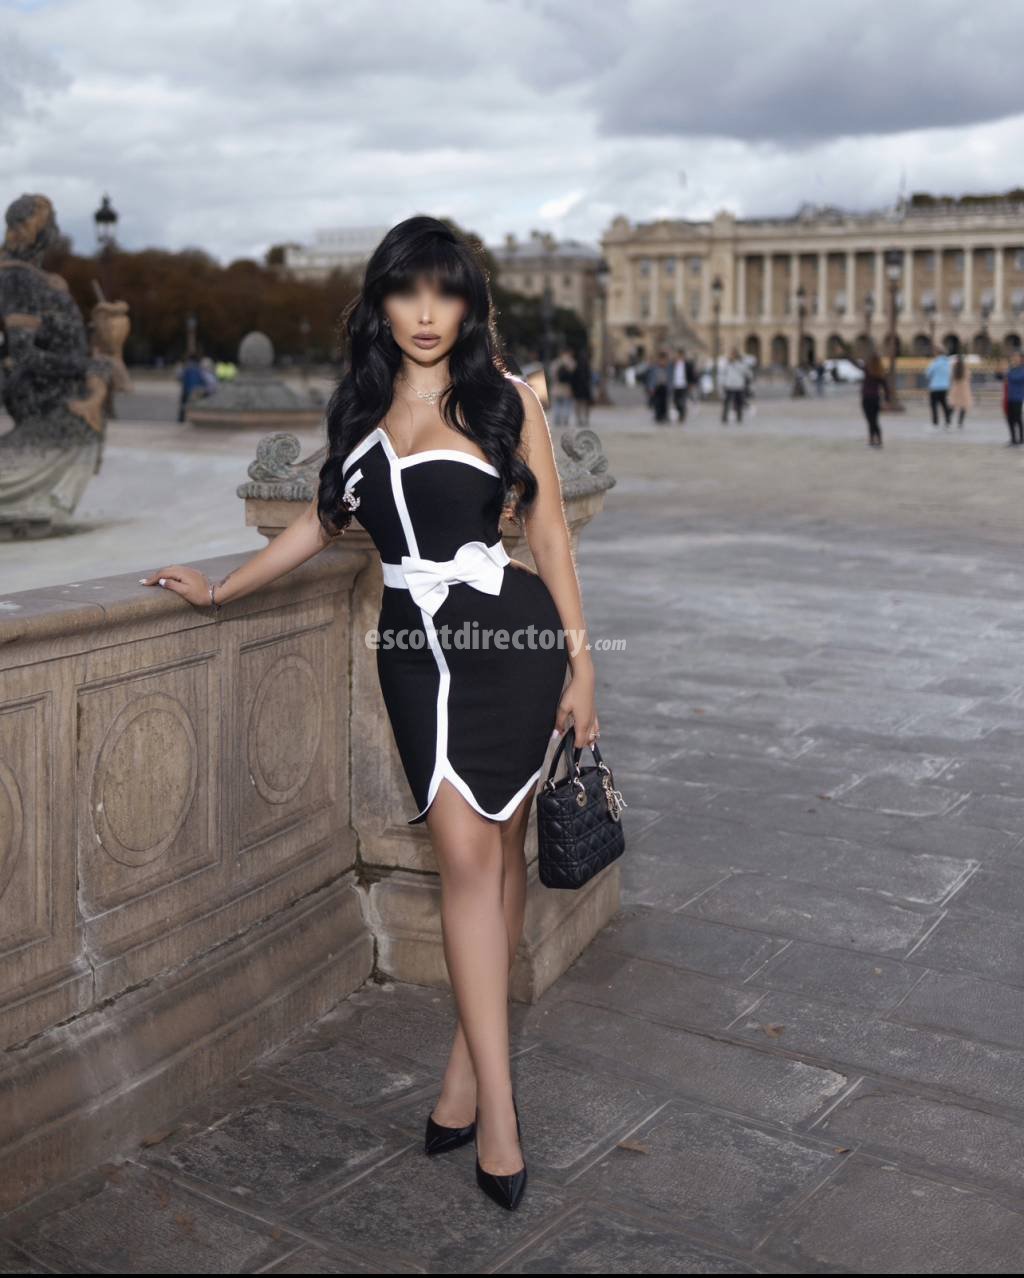 Ayah-Bella Modèle/Ex-modèle escort in Paris offers Branlette services